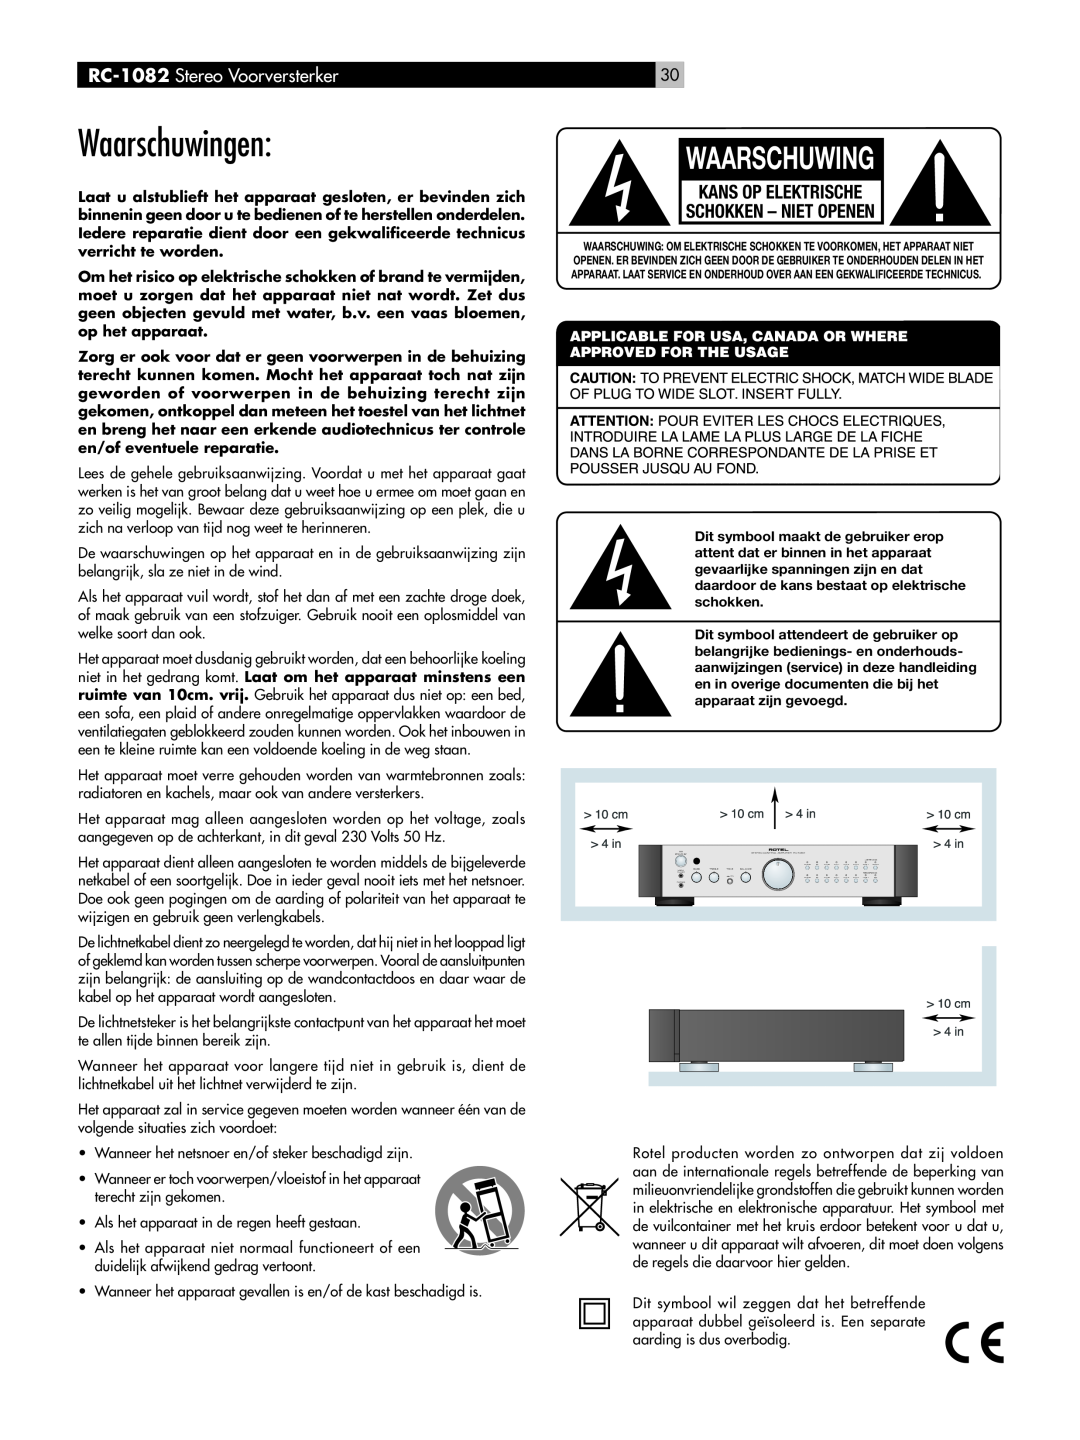 Rotel owner manual Waarschuwingen, Kans Op Elektrische Schokken – Niet Openen, RC-1082 Stereo Voorversterker 